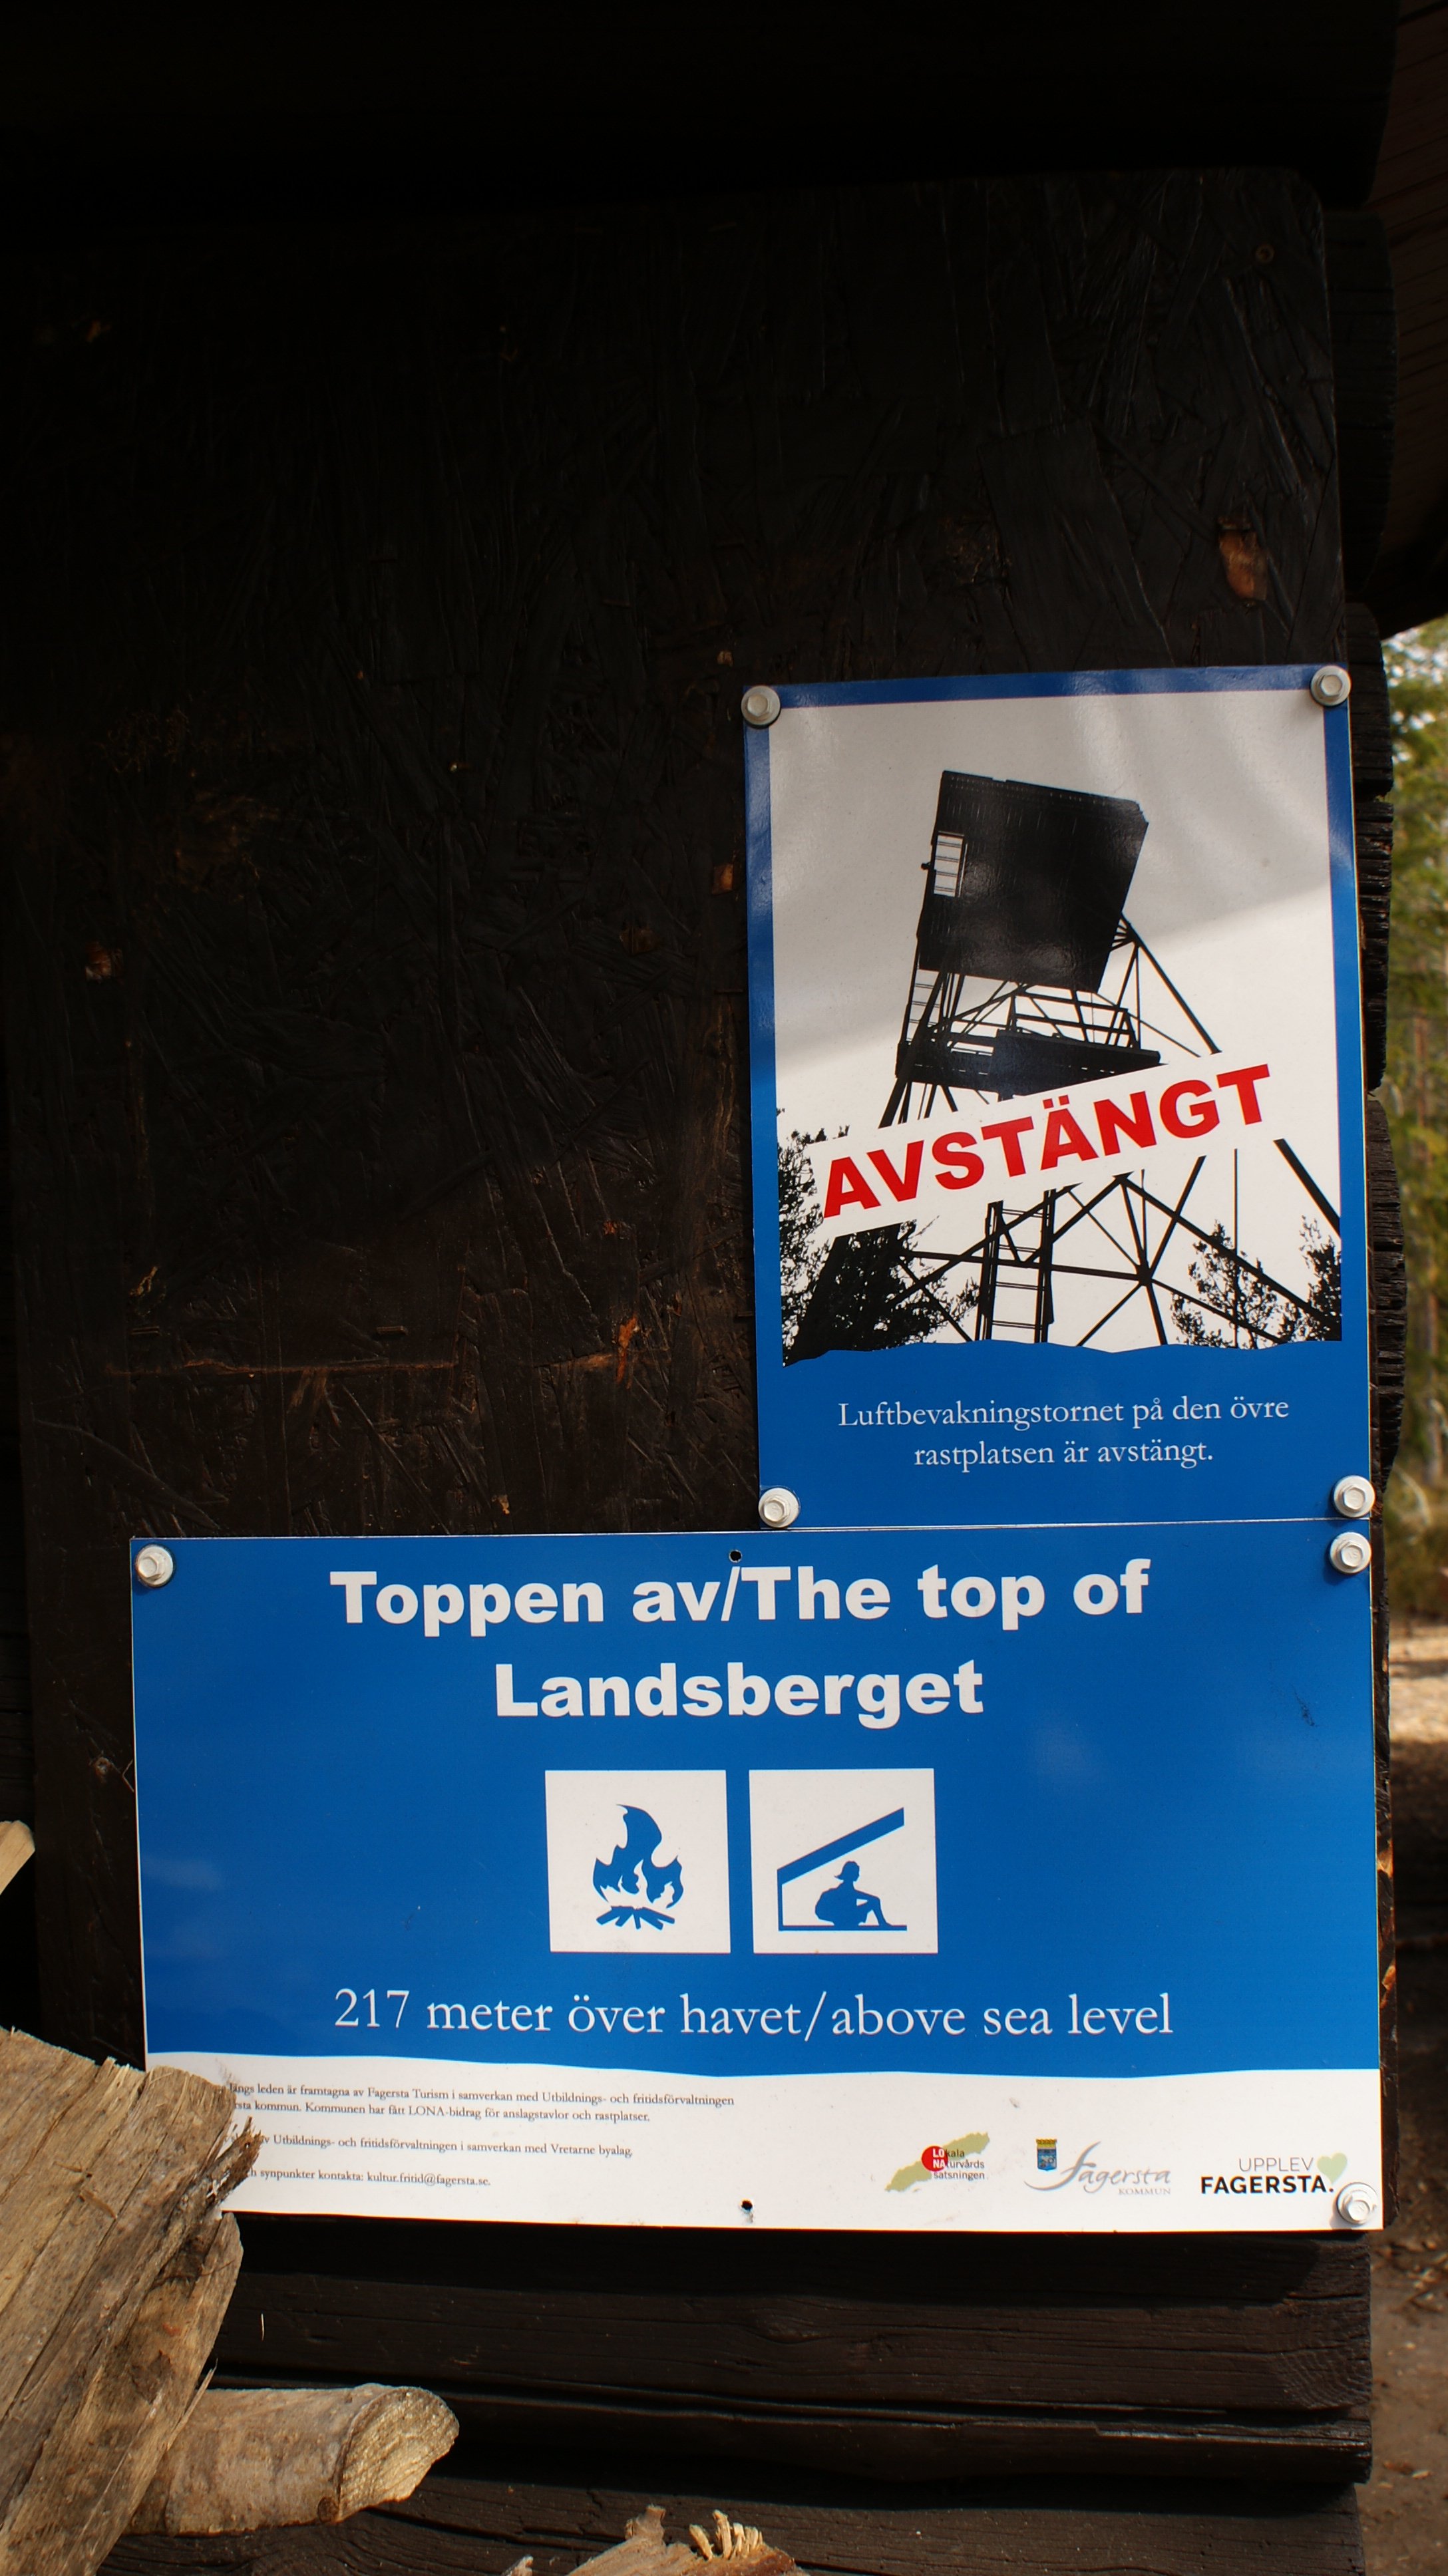 Informationsskylt vid Norra Landsberget, Luftbevakningstornet är avstängt